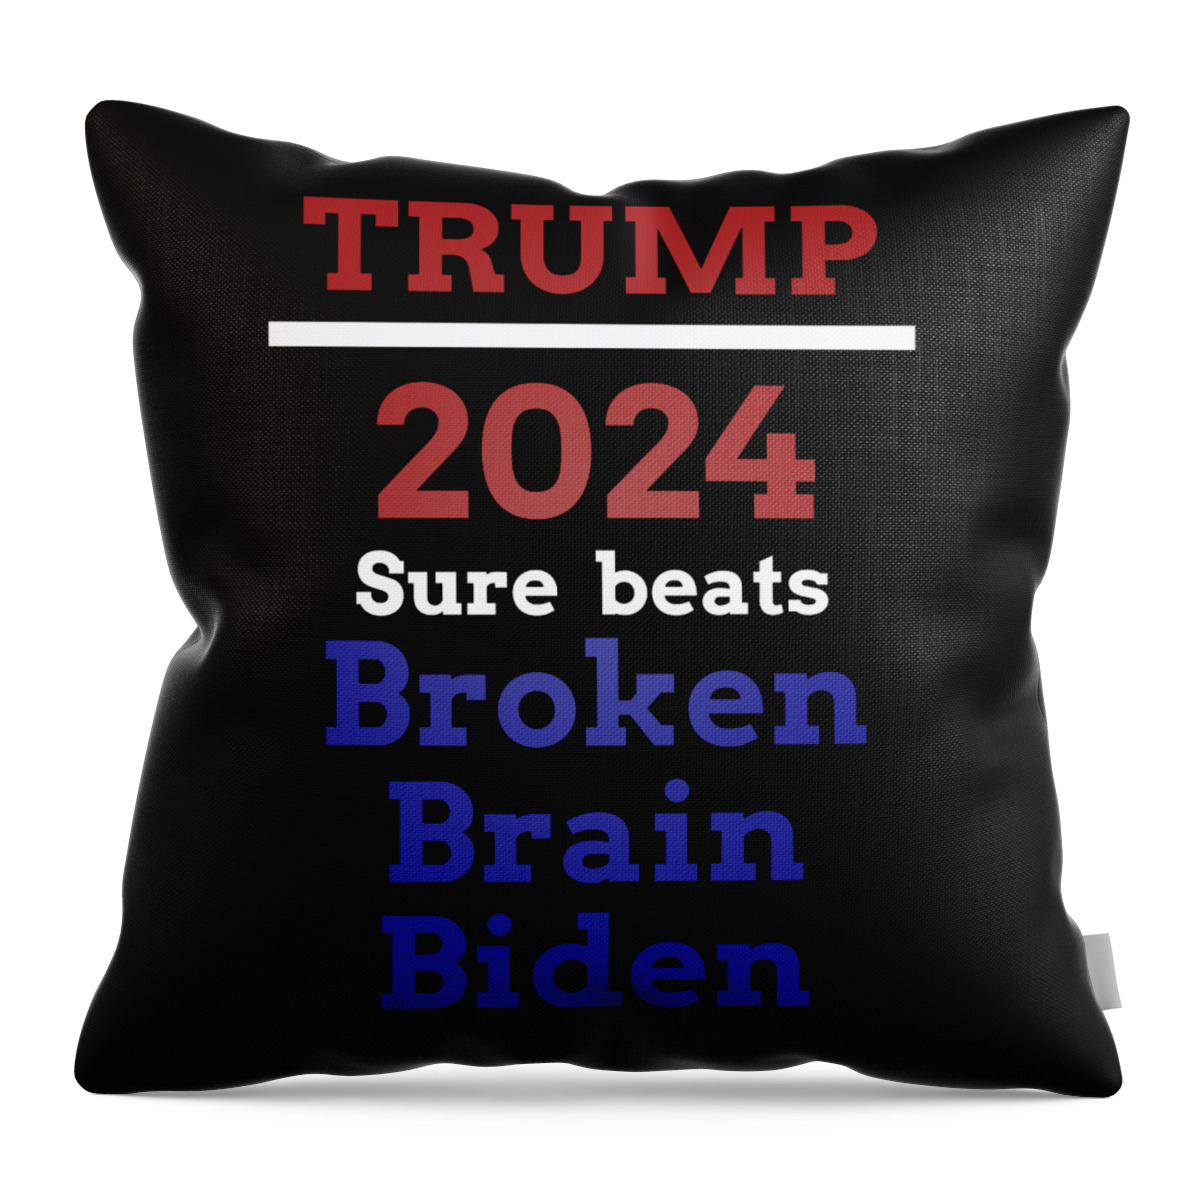 Trump 2024 Throw Pillow featuring the digital art Trump-beats Biden by James Smullins